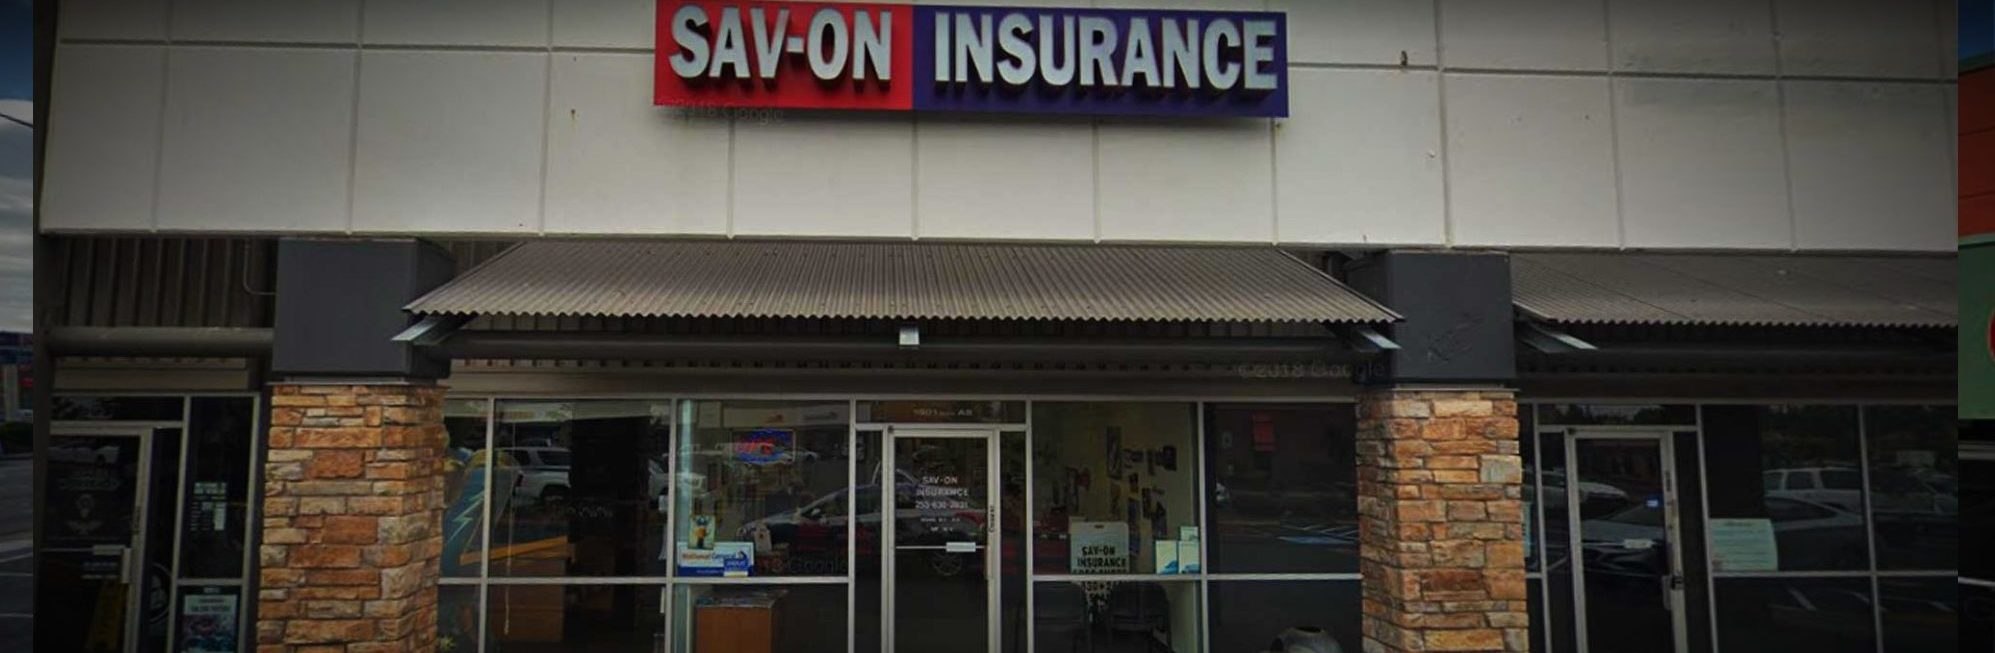 SAVON Insurance Office • SavOn Insurance